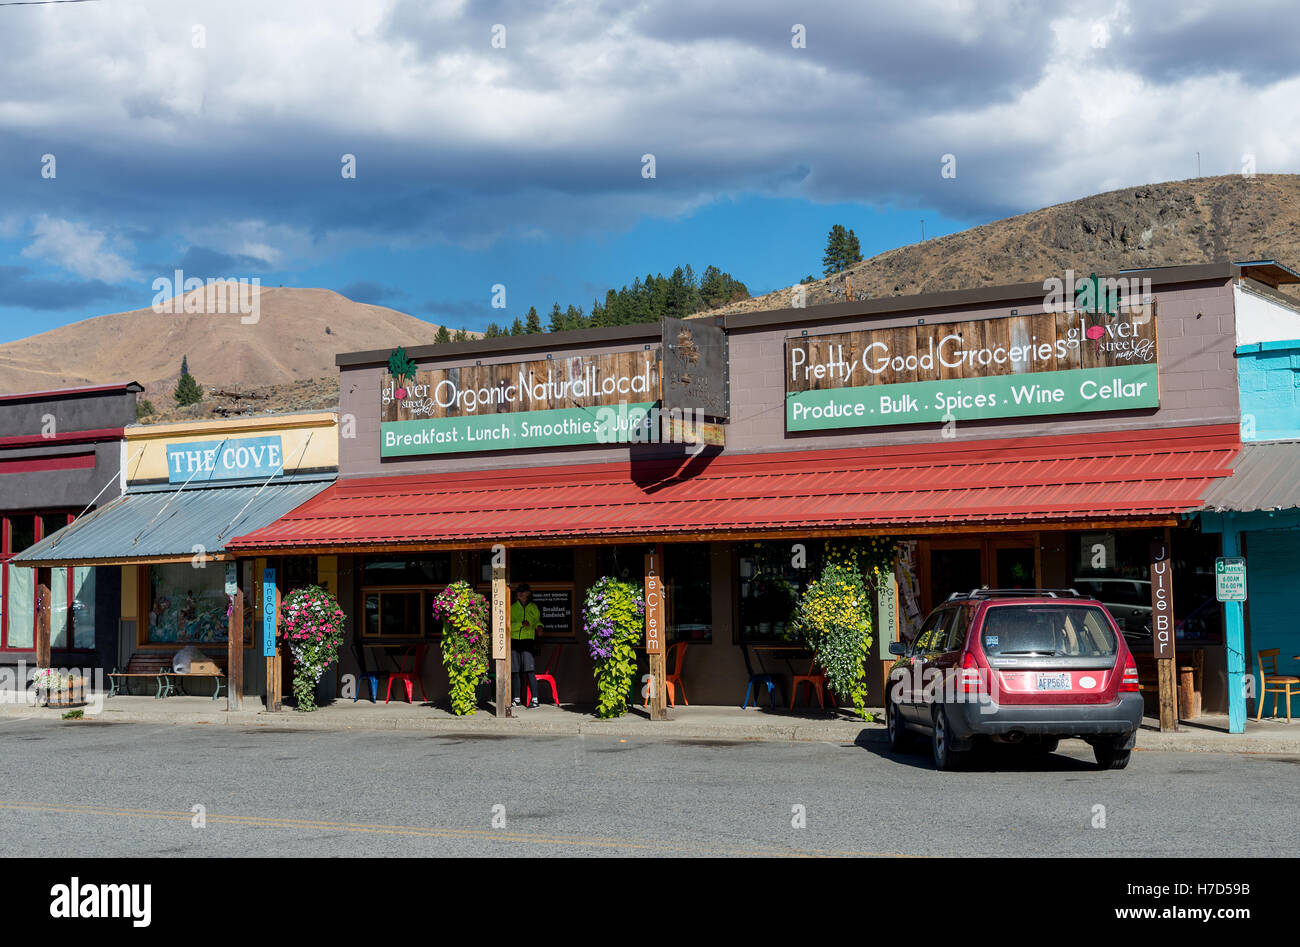 Speichern Sie verkaufen Bio und Naturkost in Kleinstadt Twisp, Washington, USA. Stockfoto